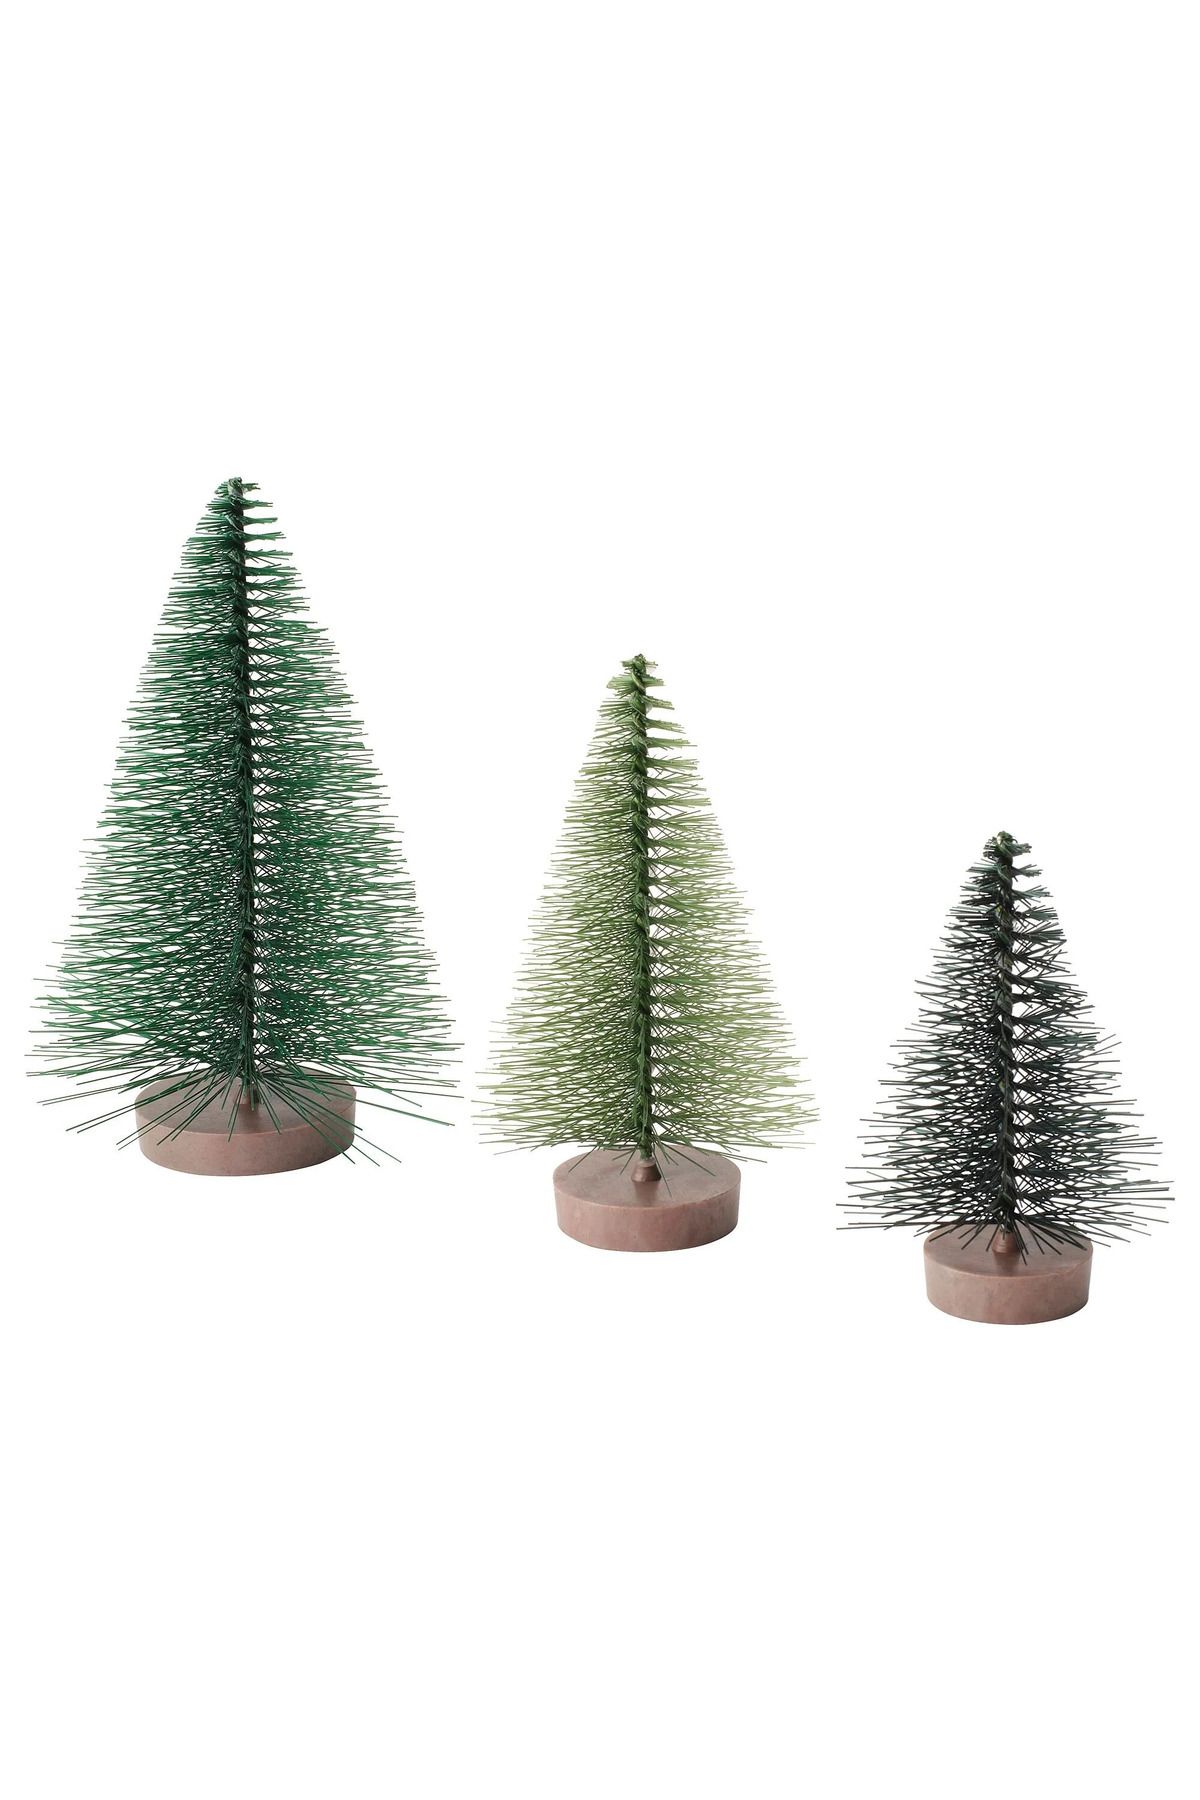 IKEA Yılbaşı Süsü, 3 Parça Yeşil Küçük Çam Ağacı Dekoratif Aksesuar